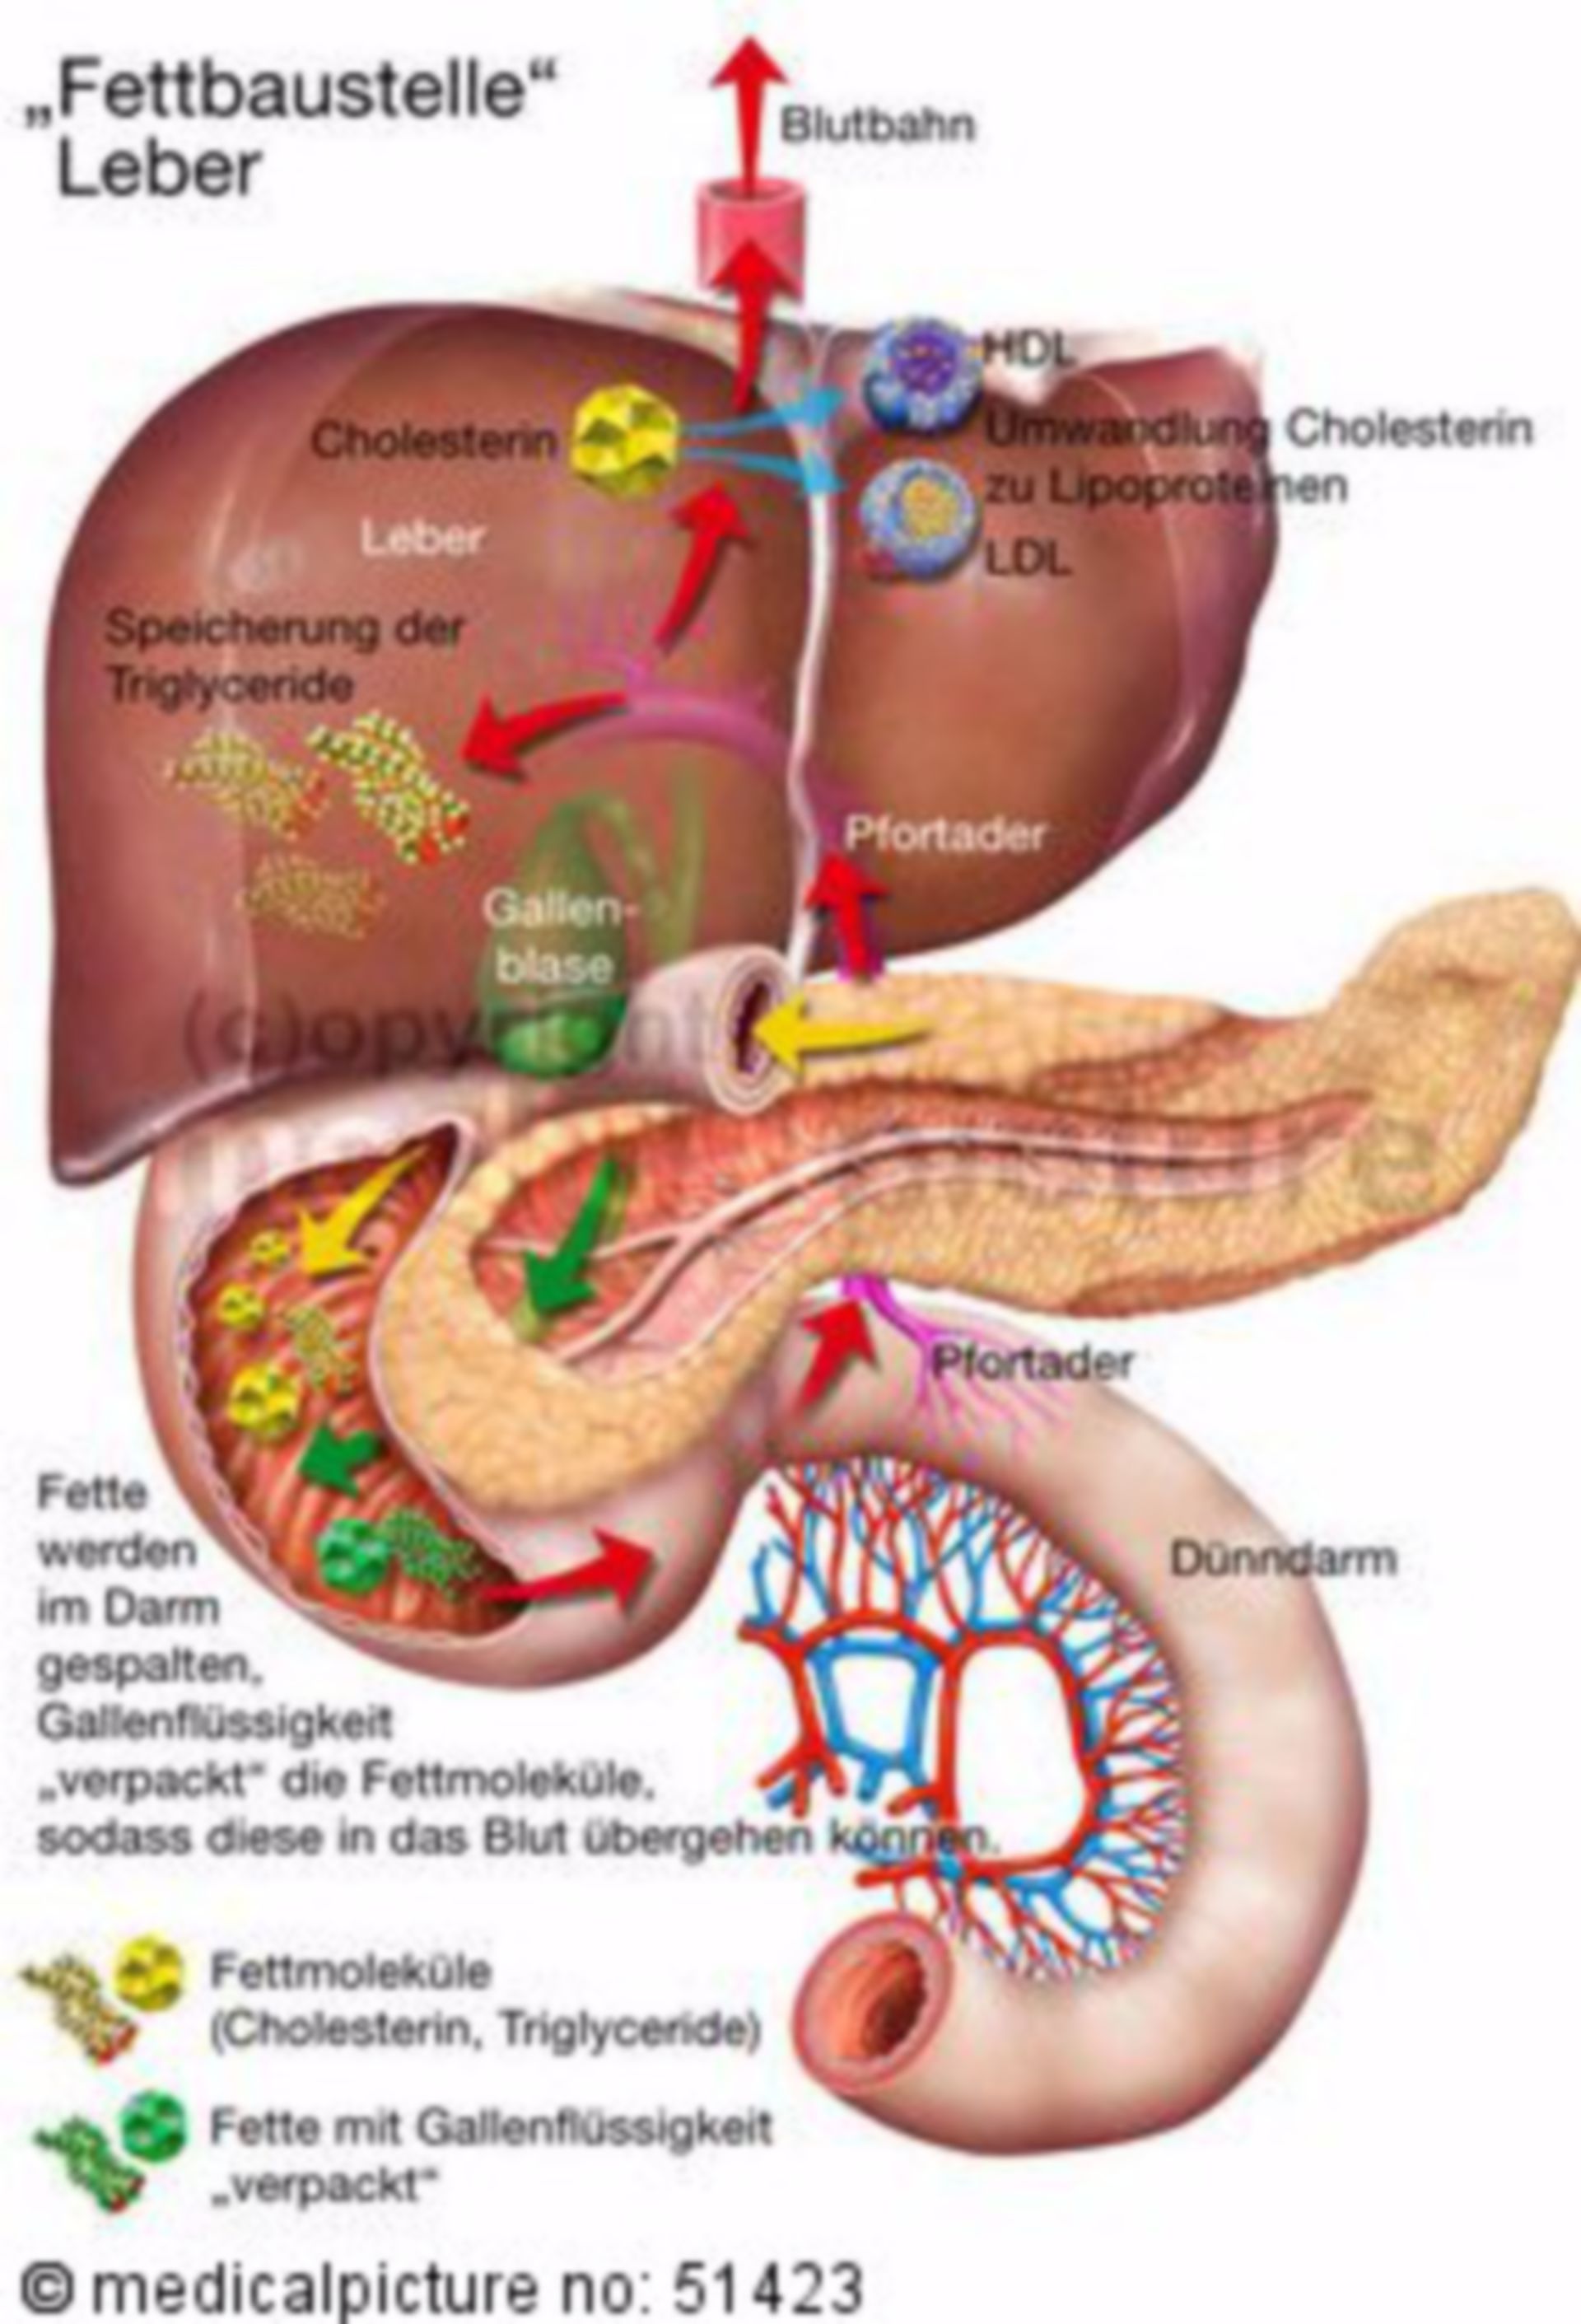  Fettstoffwechsel in der Leber 
